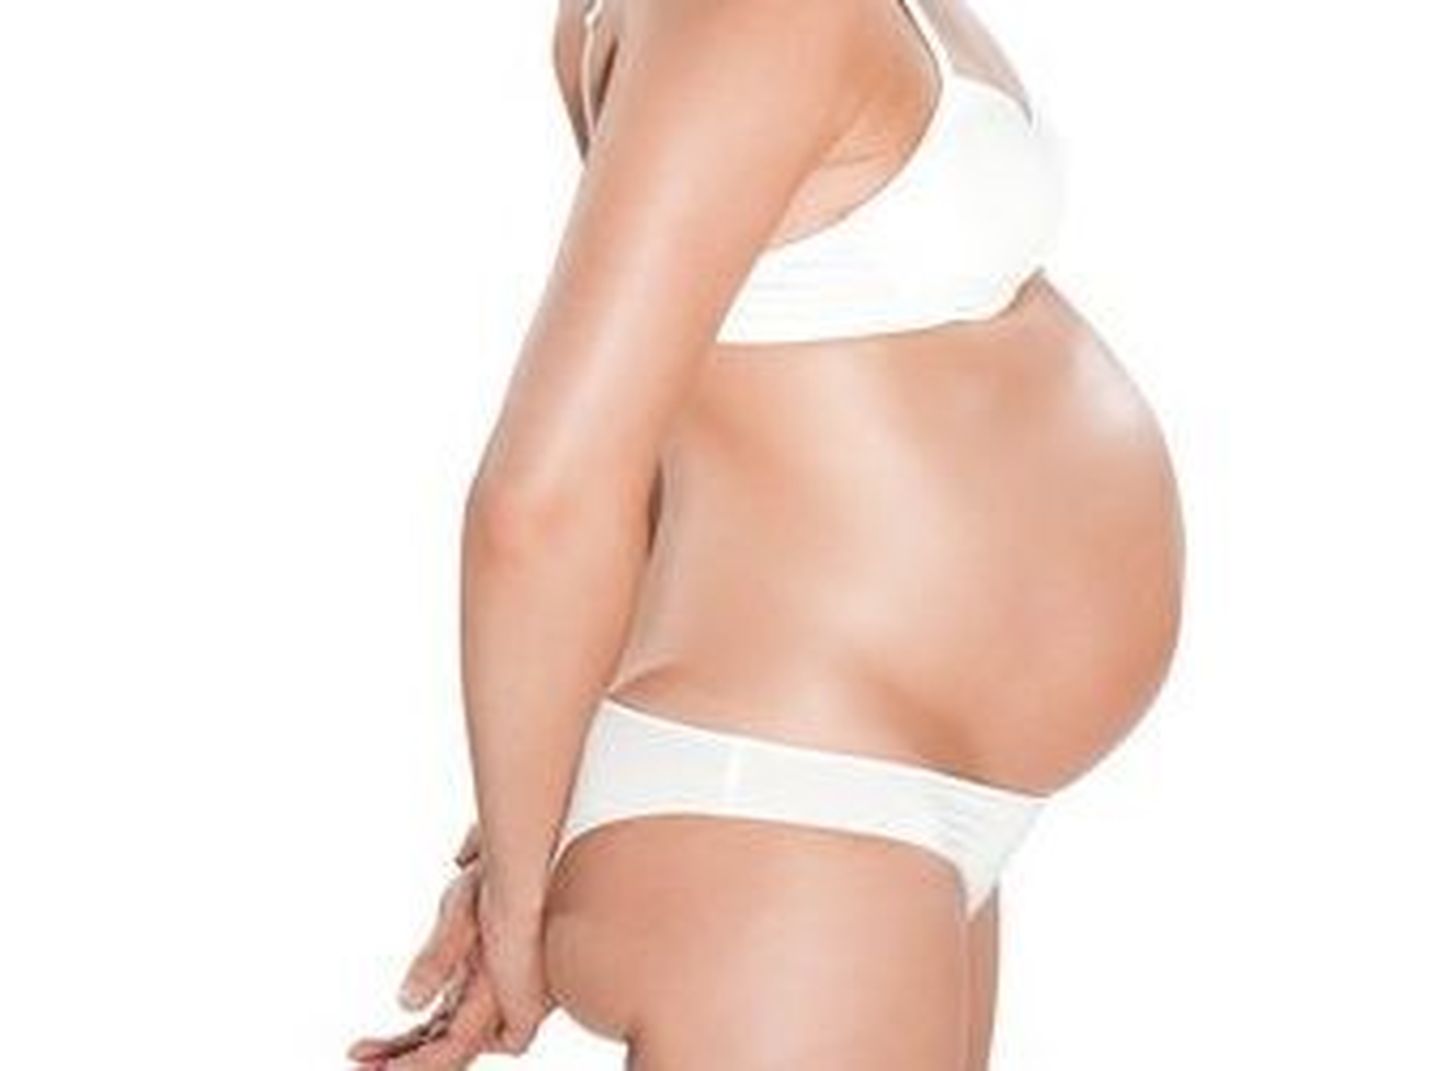 Беременная женщина. Иллюстративное фото.